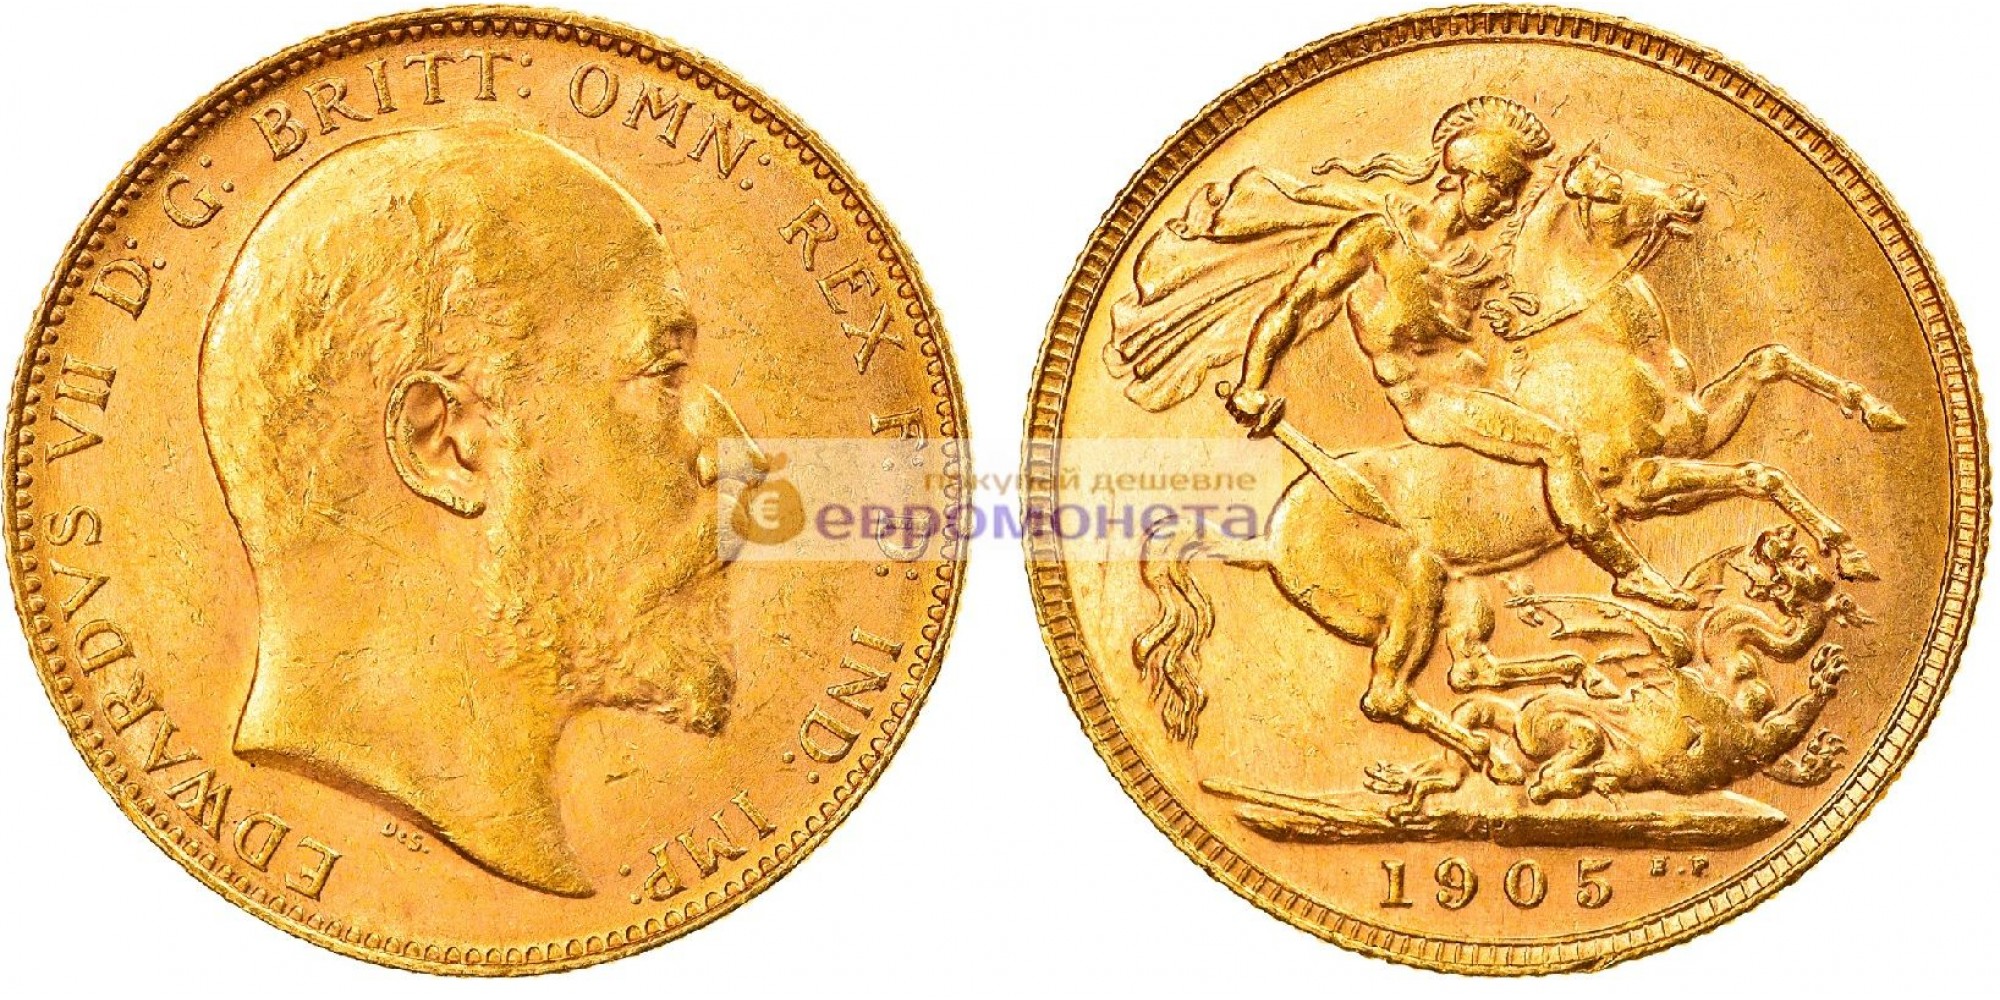 Австралия 1 соверен 1905 год. Король Эдуард VII. Отметка монетного двора "P" - Перт. Золото.